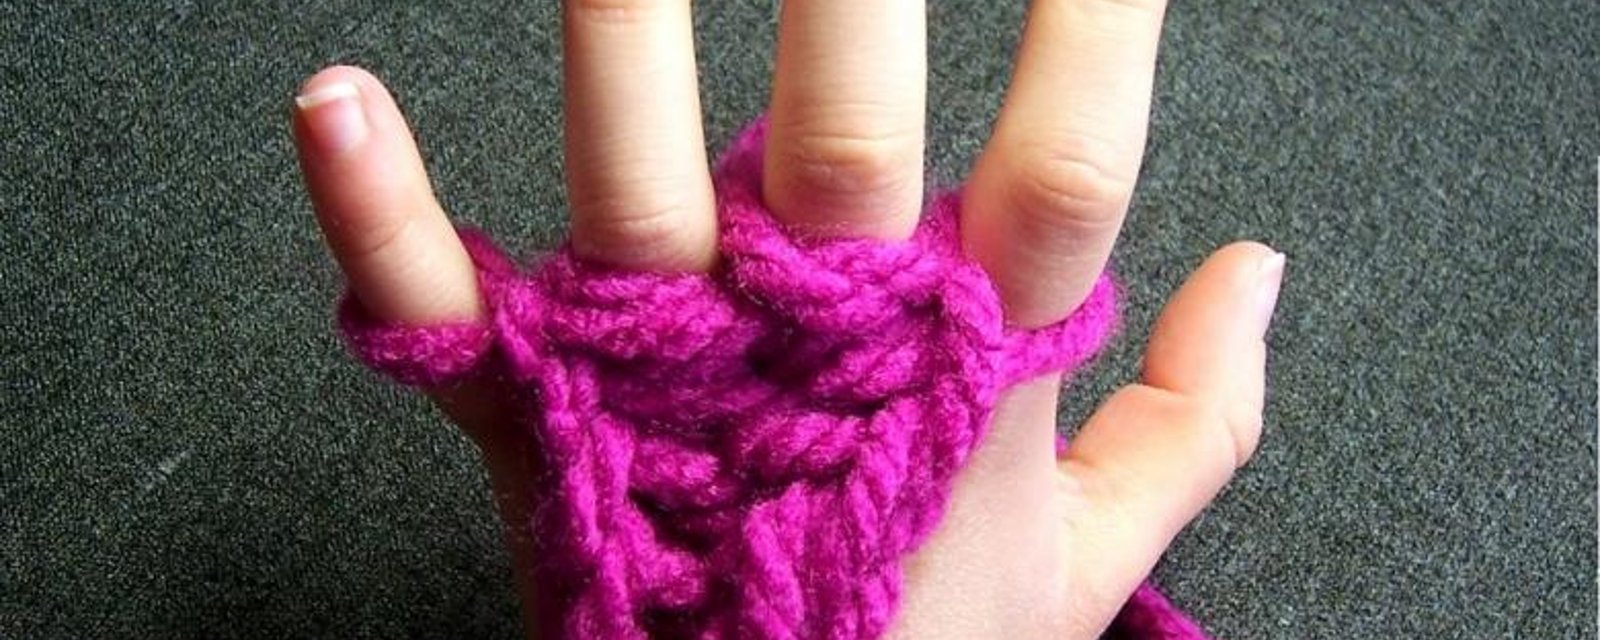 Tricoter avec les doigts! Une activité pour les petits! 